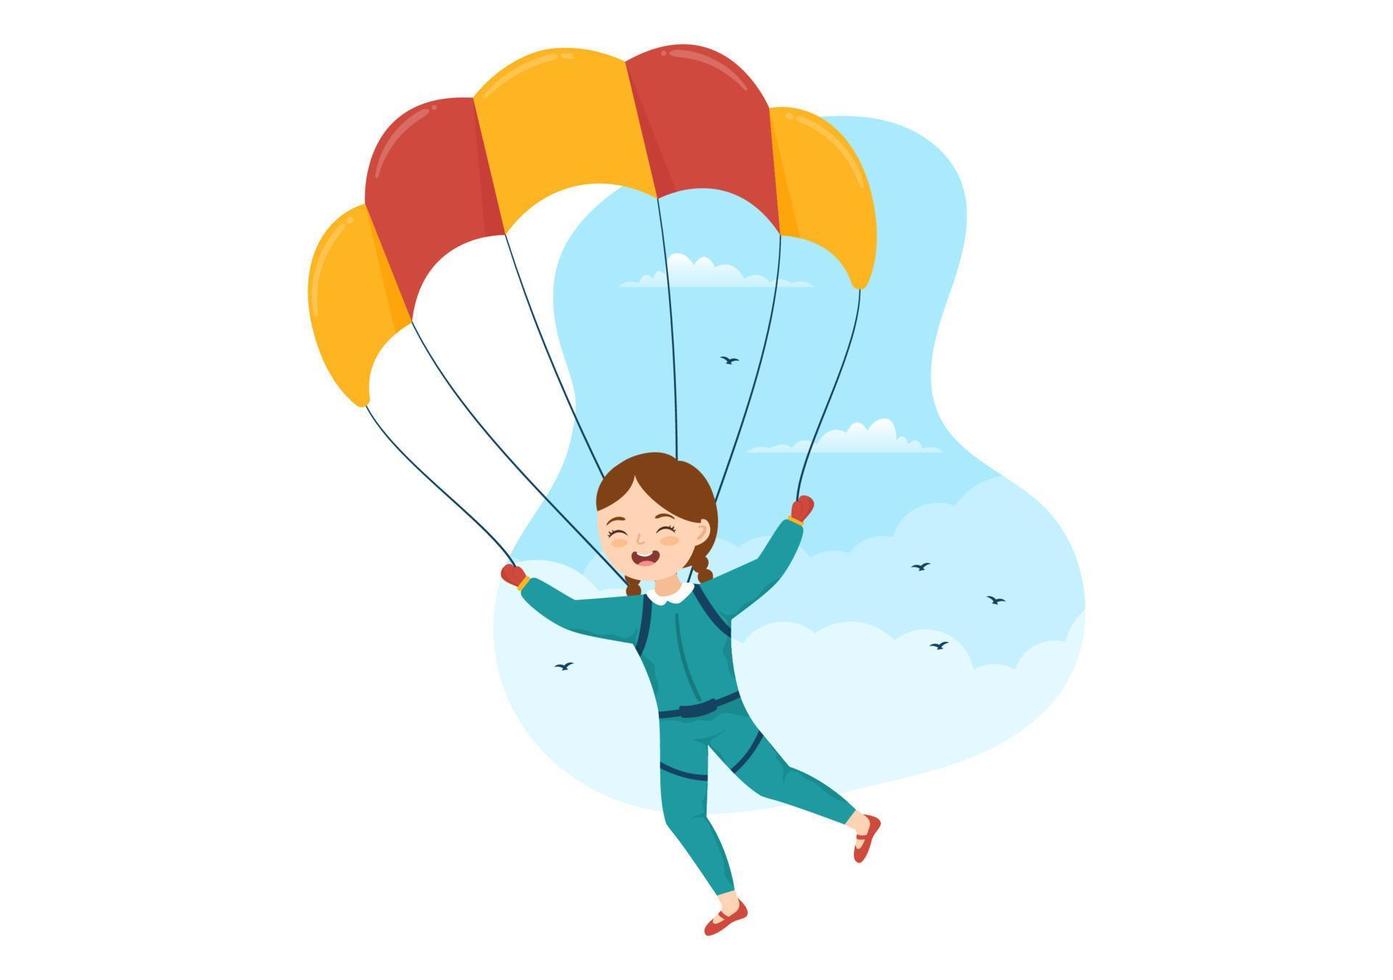 fallschirmspringen illustration mit kindern fallschirmspringer verwenden fallschirm und himmelsprung für outdoor-aktivitäten in flachen handgezeichneten vorlagen für extreme sportkarikaturen vektor